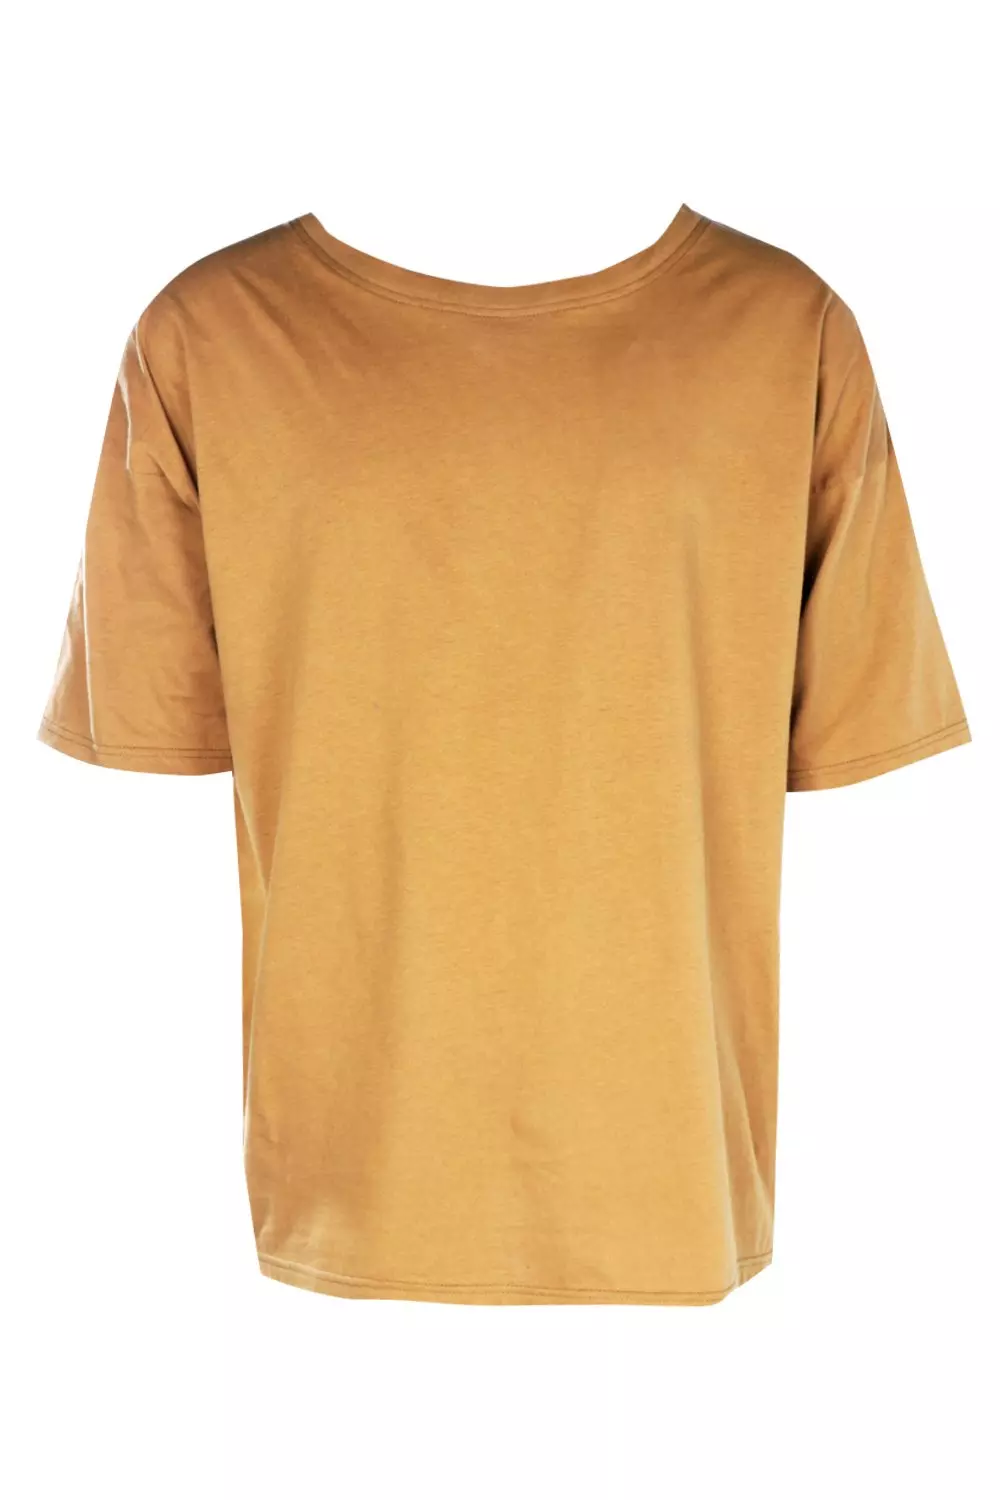 LBO - Tee Shirt Oversize Large 2140 Blanc 